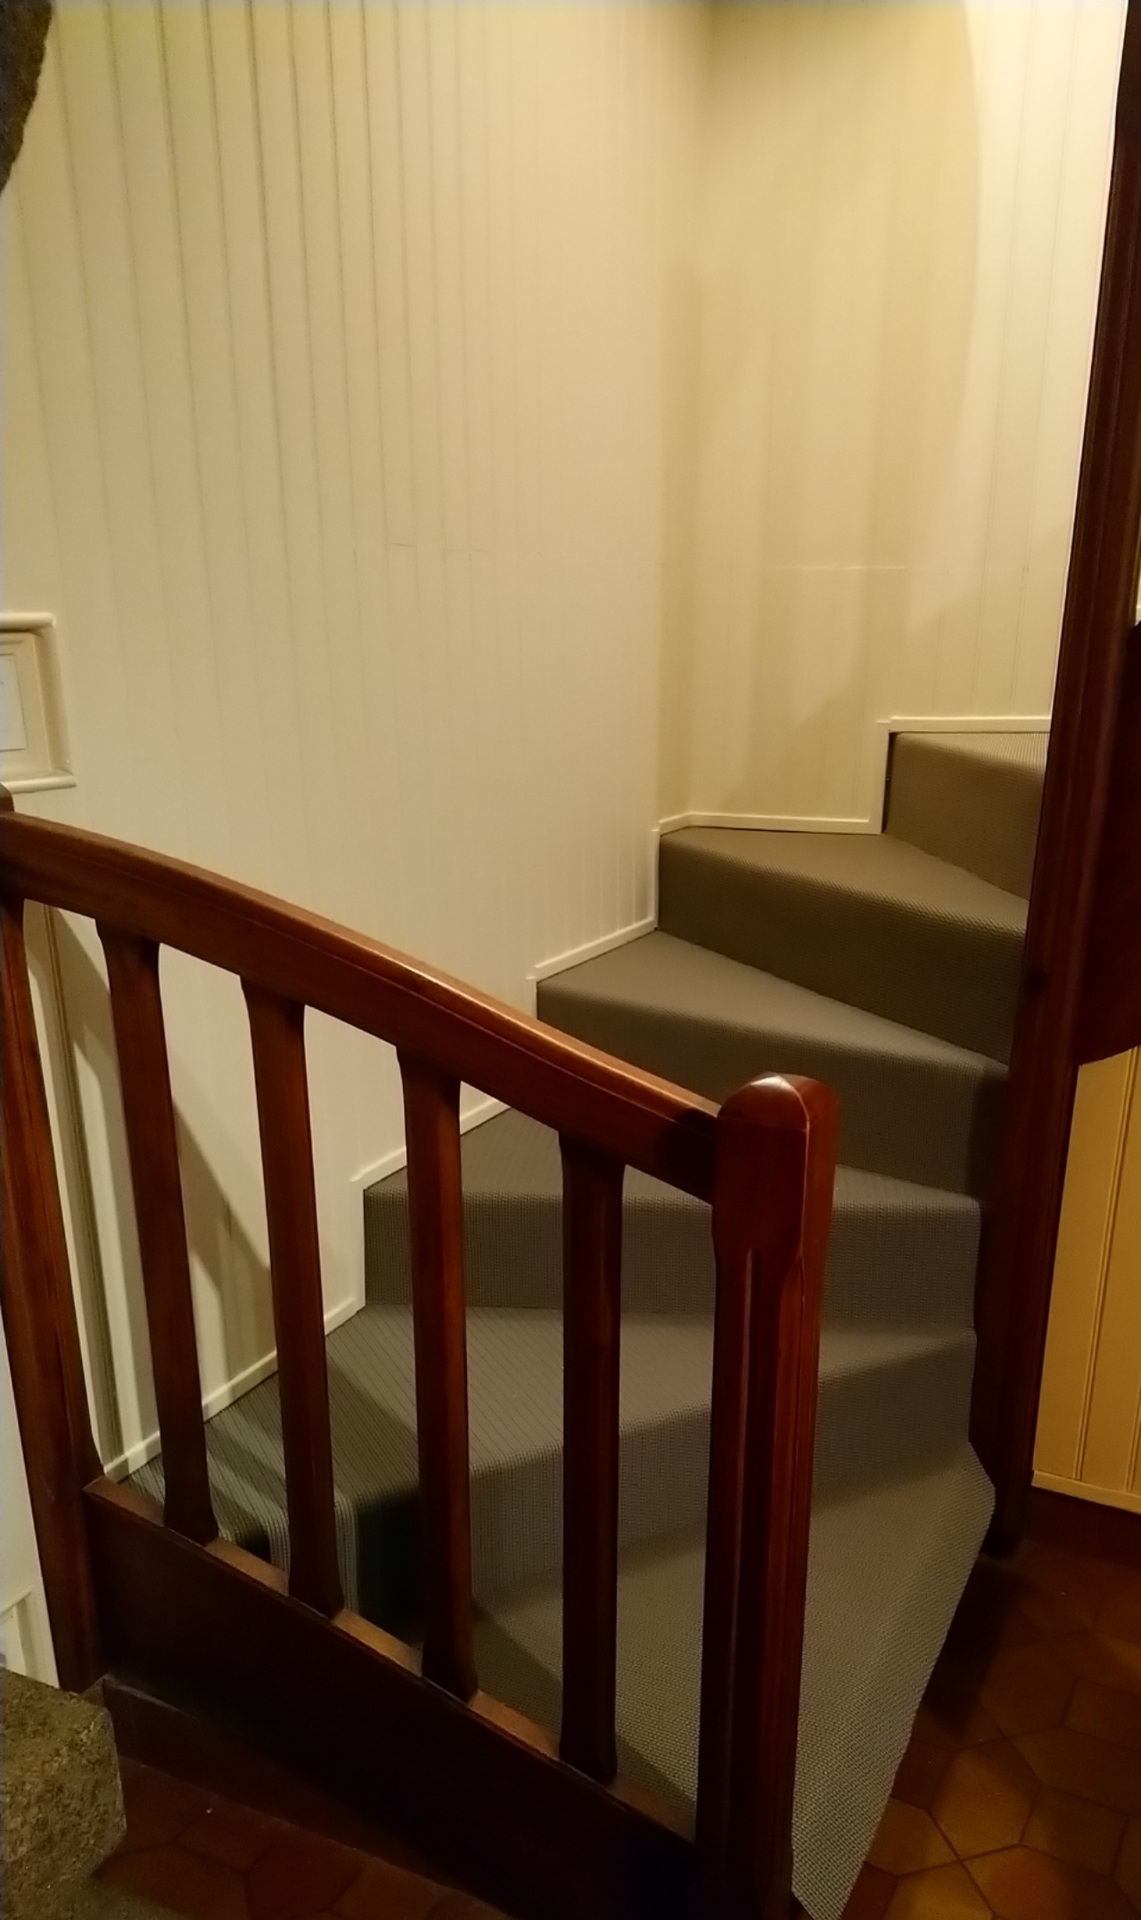 Ref vign corefi renovation escalier dickson 3